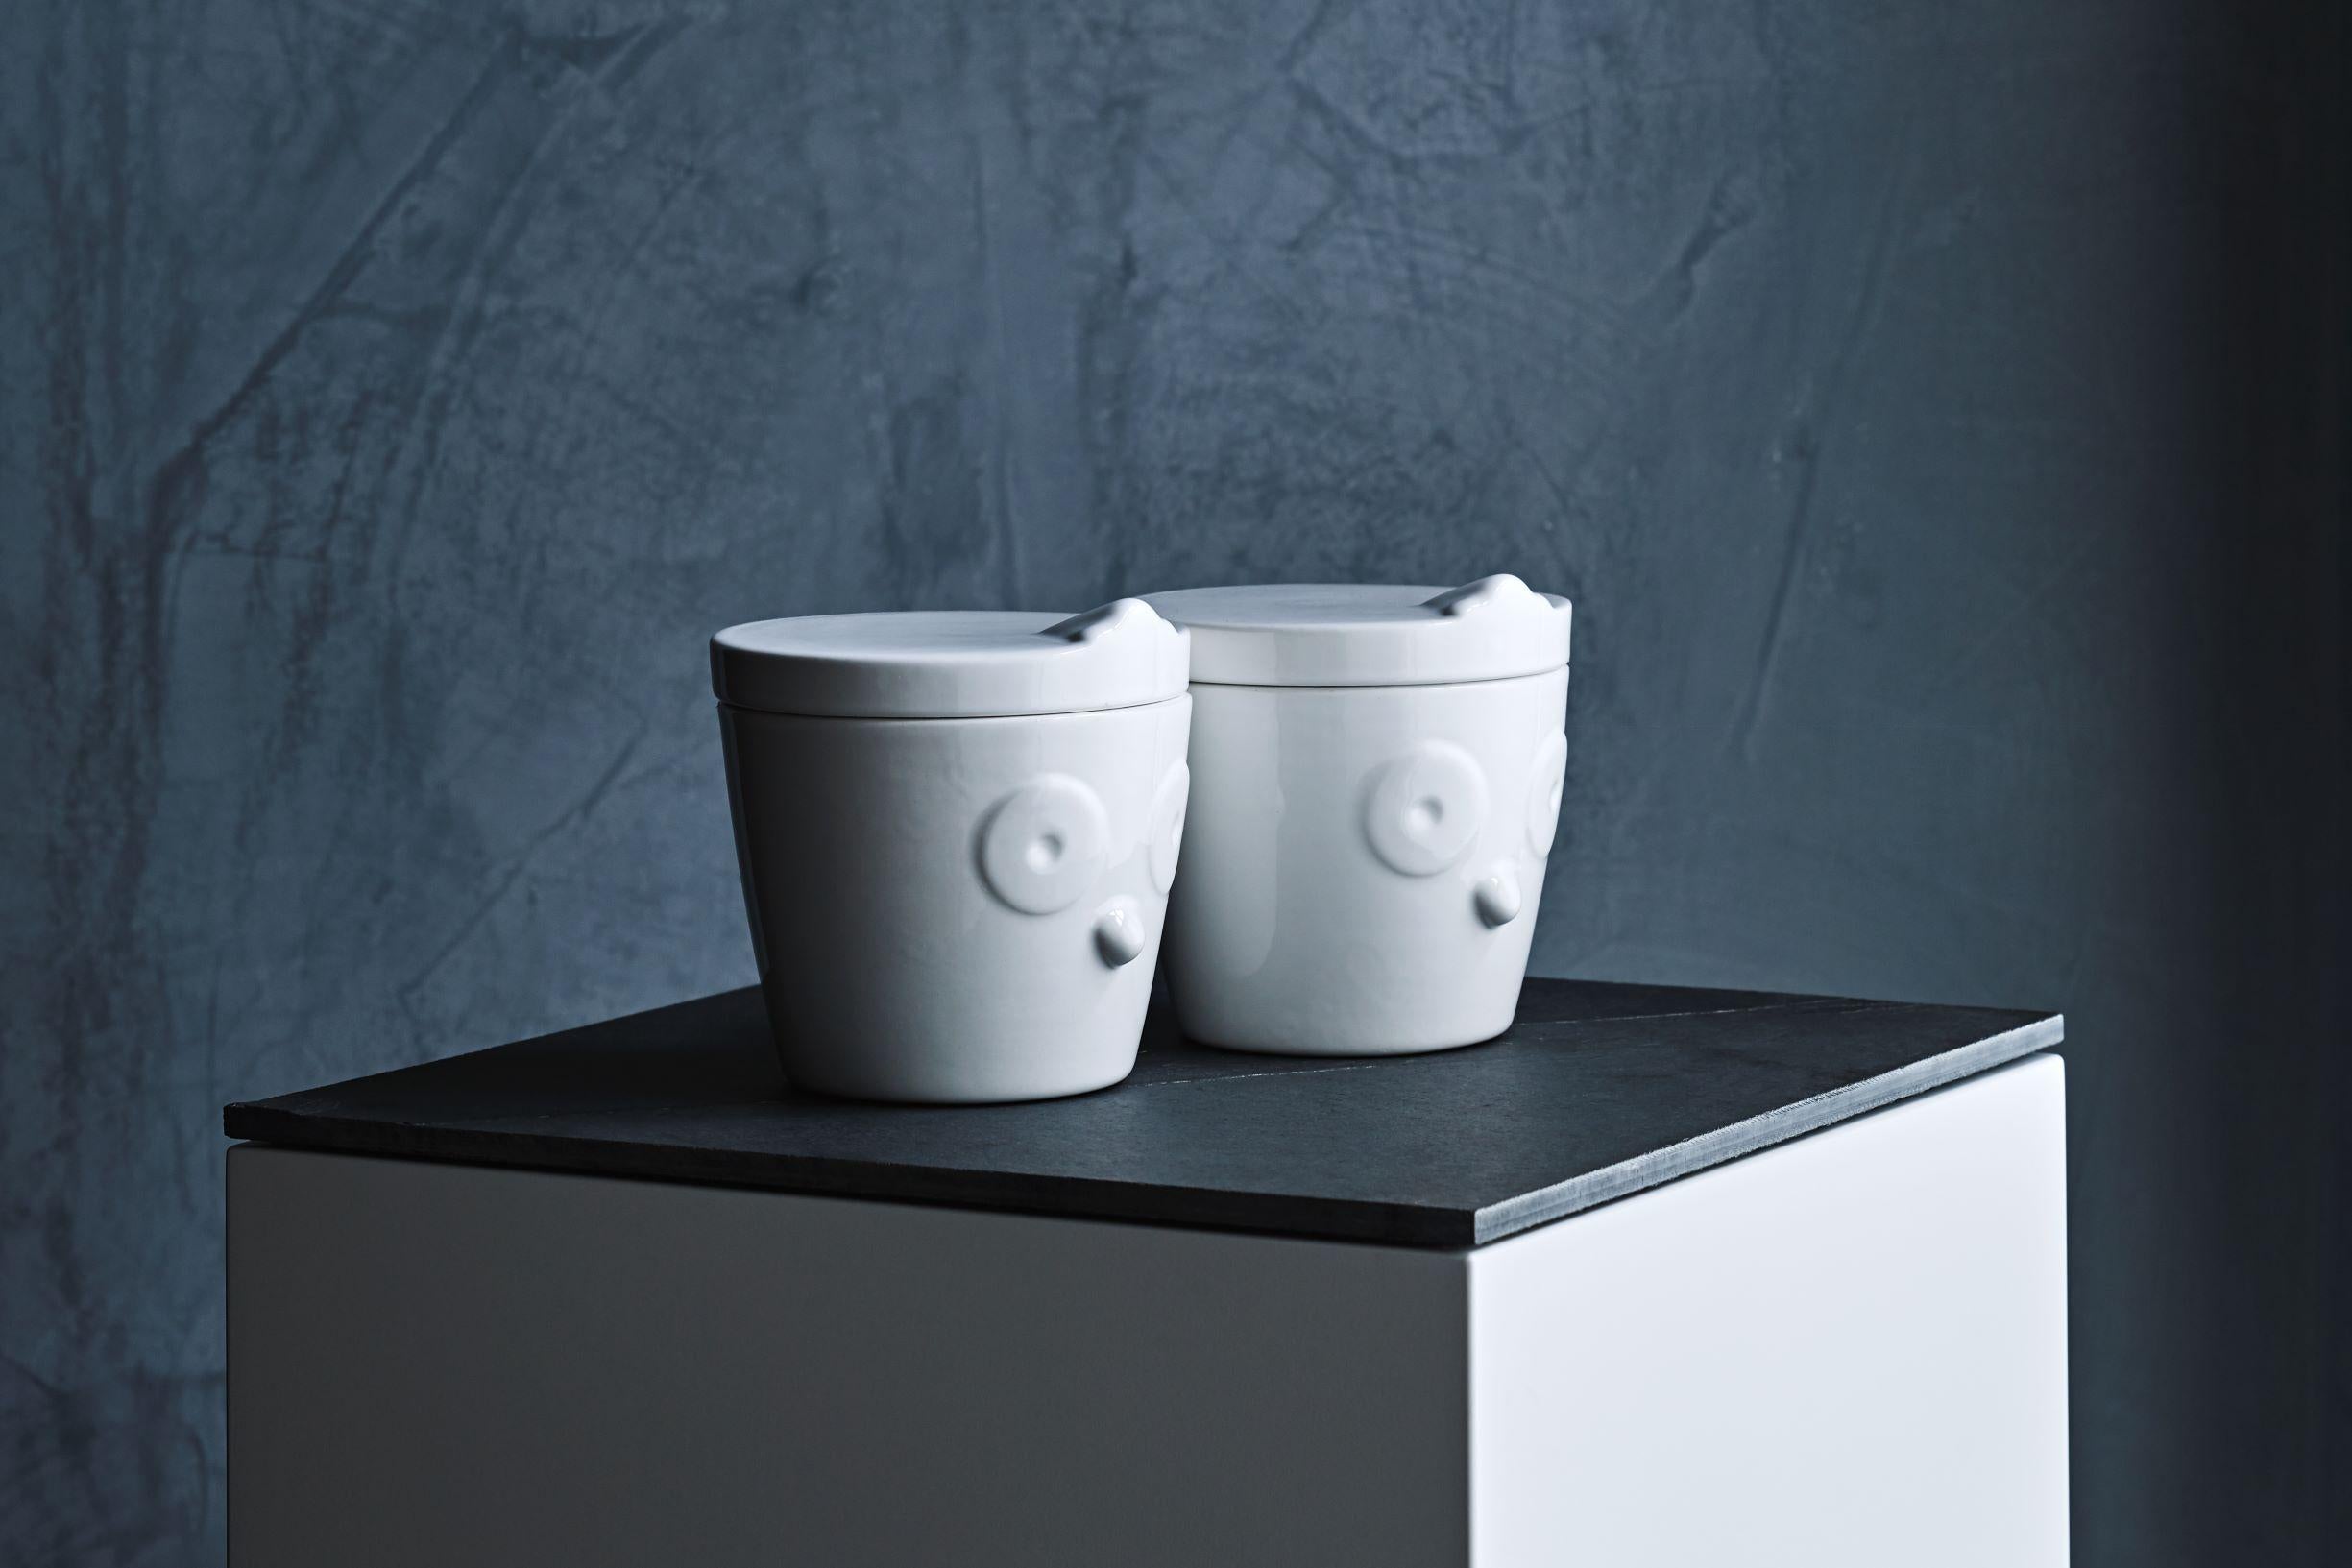 Les bocaux en céramique avec couvercle de la collection Ainu de SoShiro, une collaboration entre l'artiste primé Toru Kaizawa et Shiro Muchiri, sont de taille généreuse et peuvent être utilisés pour le miel, le sucre ou tout autre condiment choisi,